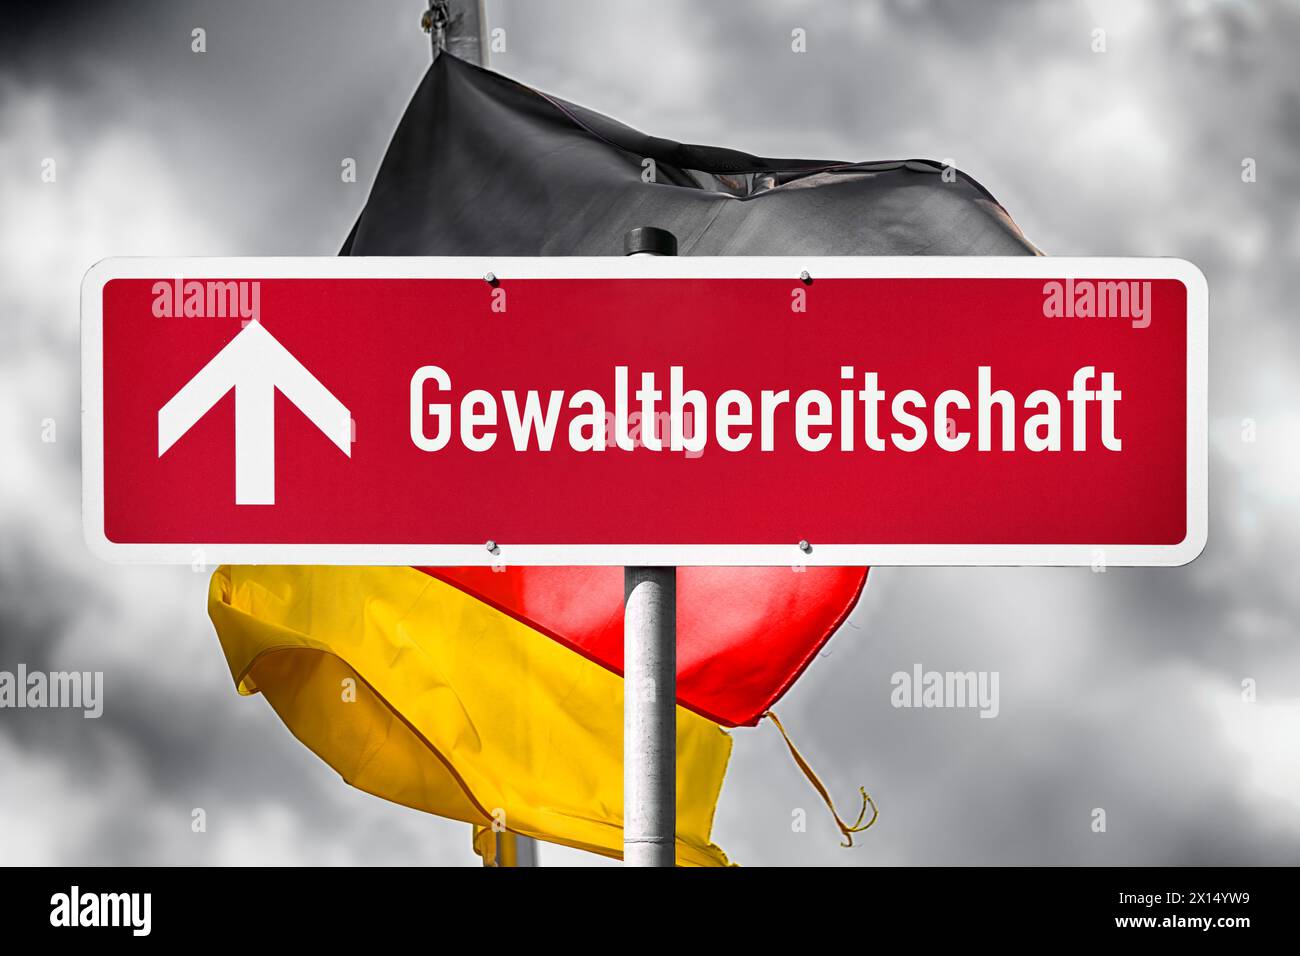 Segno rosso con le parole Gewaltbereitschaft e Una freccia rivolta di fronte a Una bandiera tedesca, fotomontaggio Foto Stock